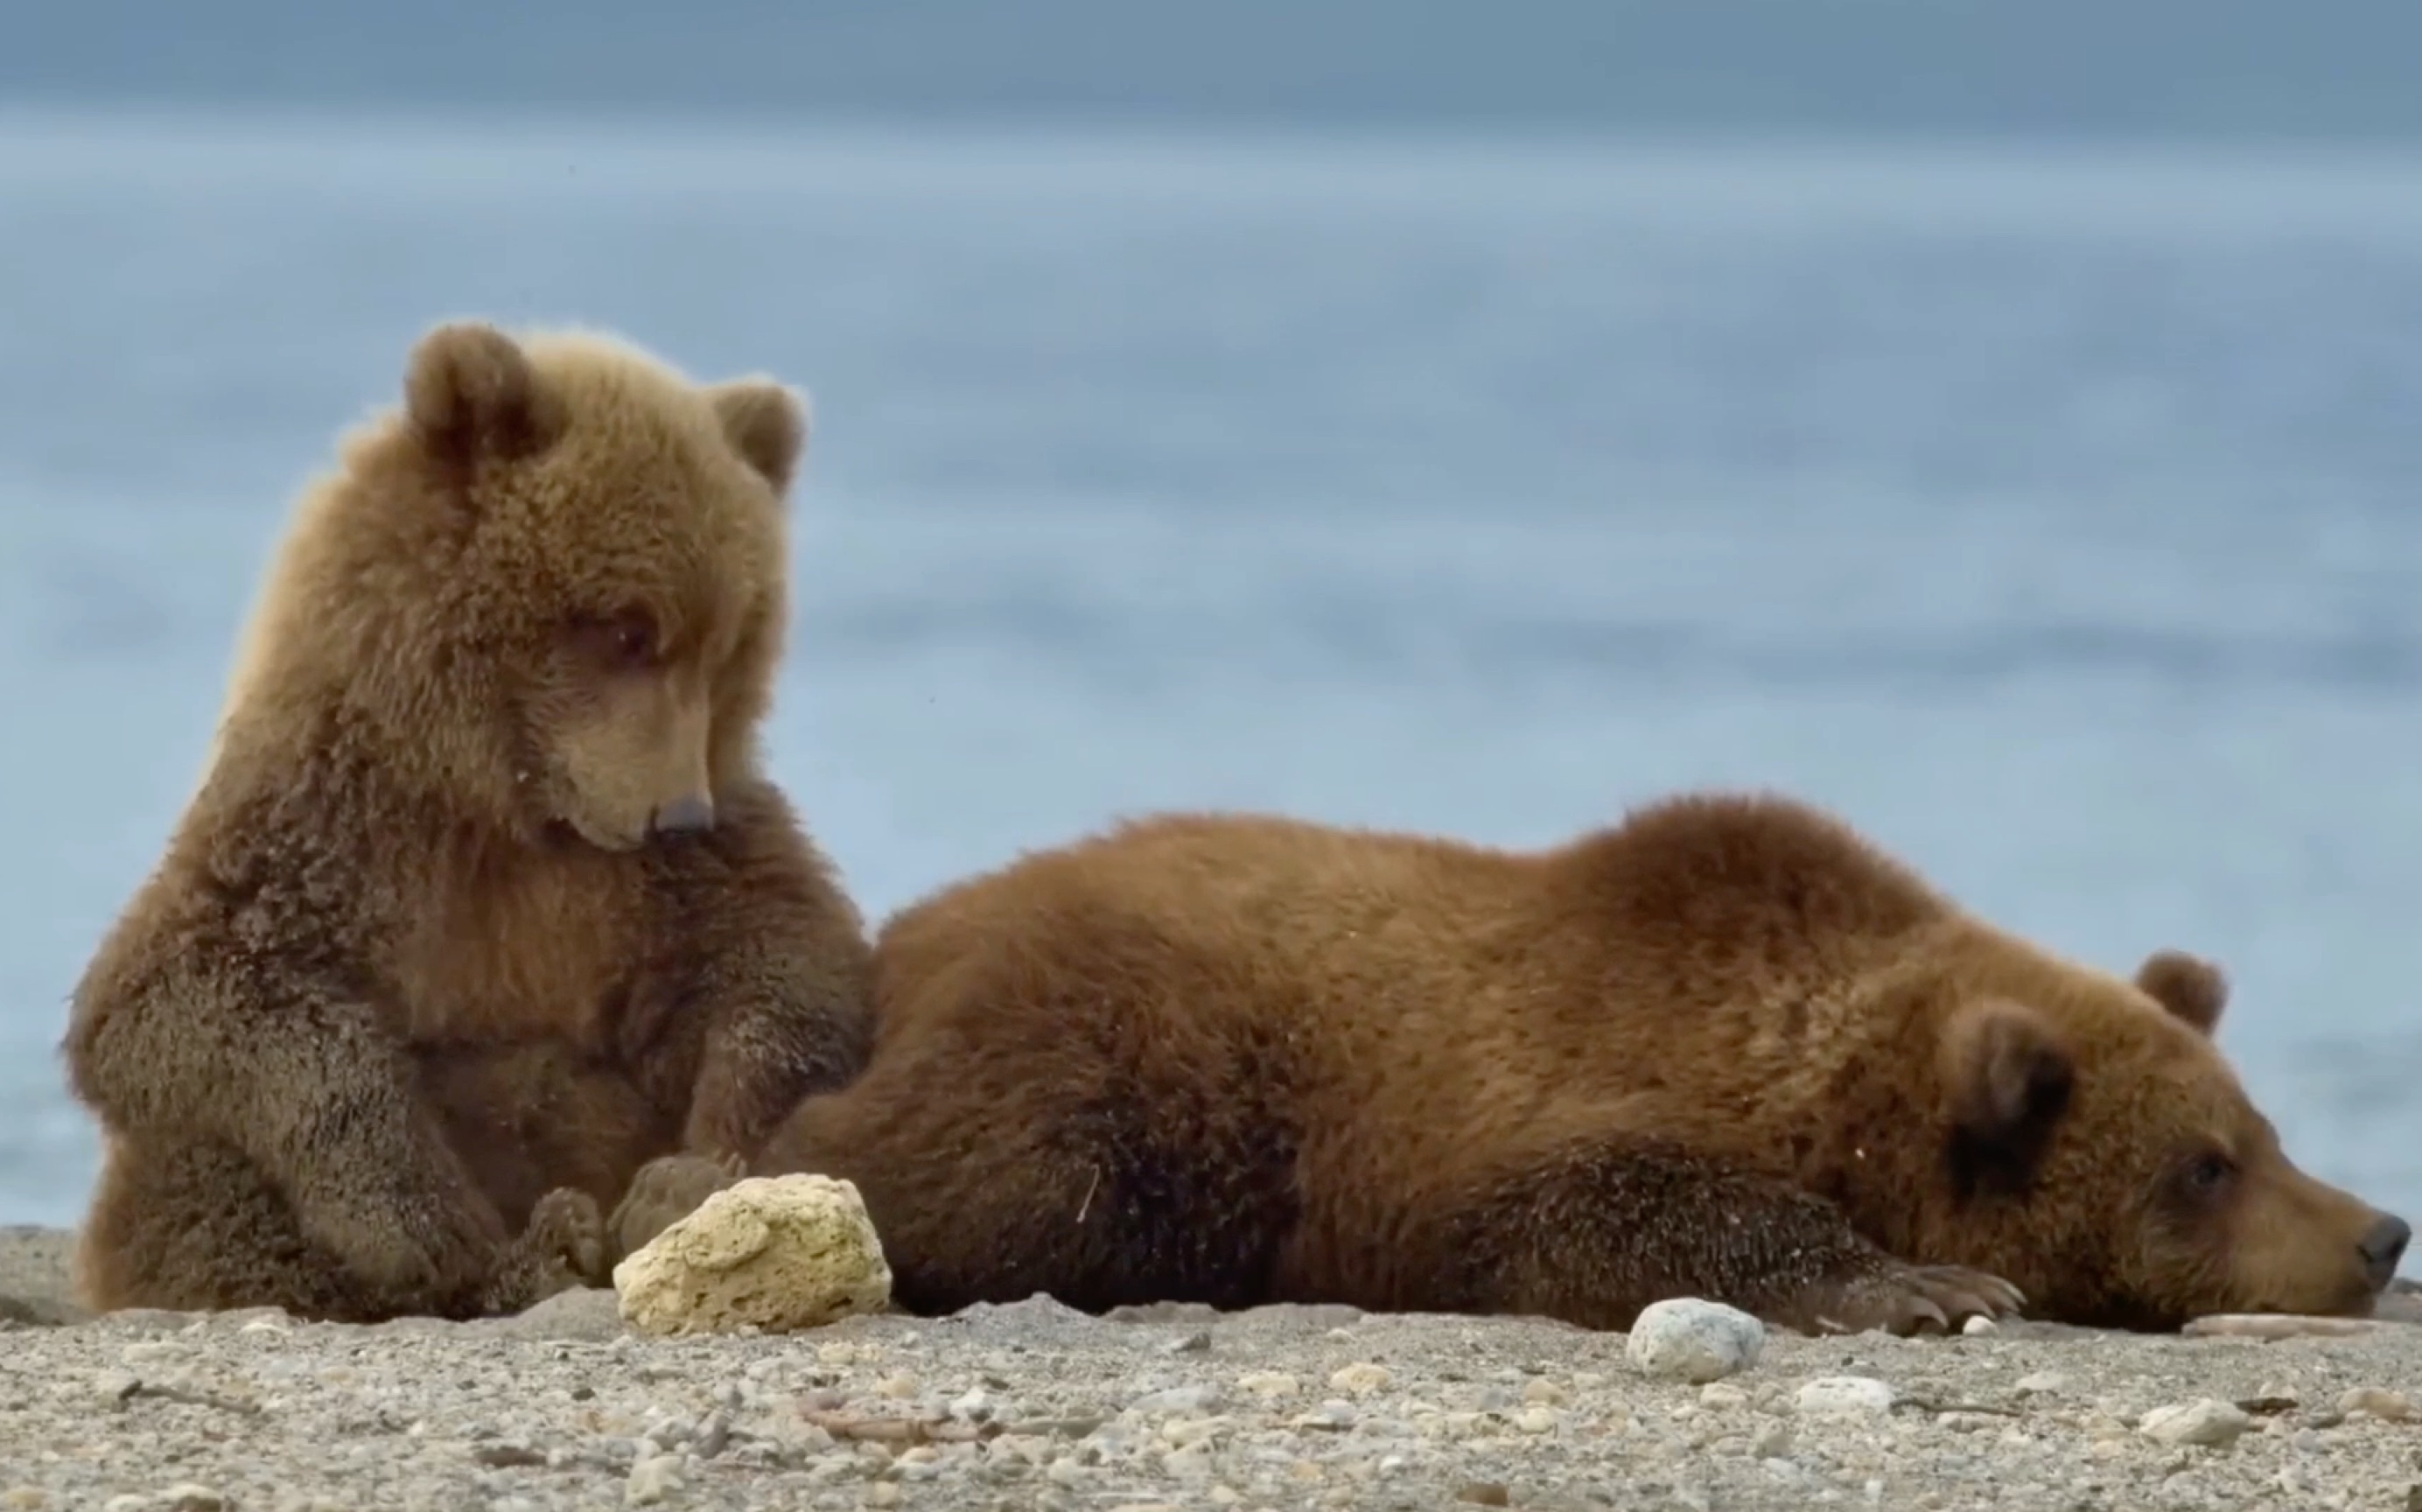 两只小熊好委屈哦!难道是因为熊妈妈心情不好吗?